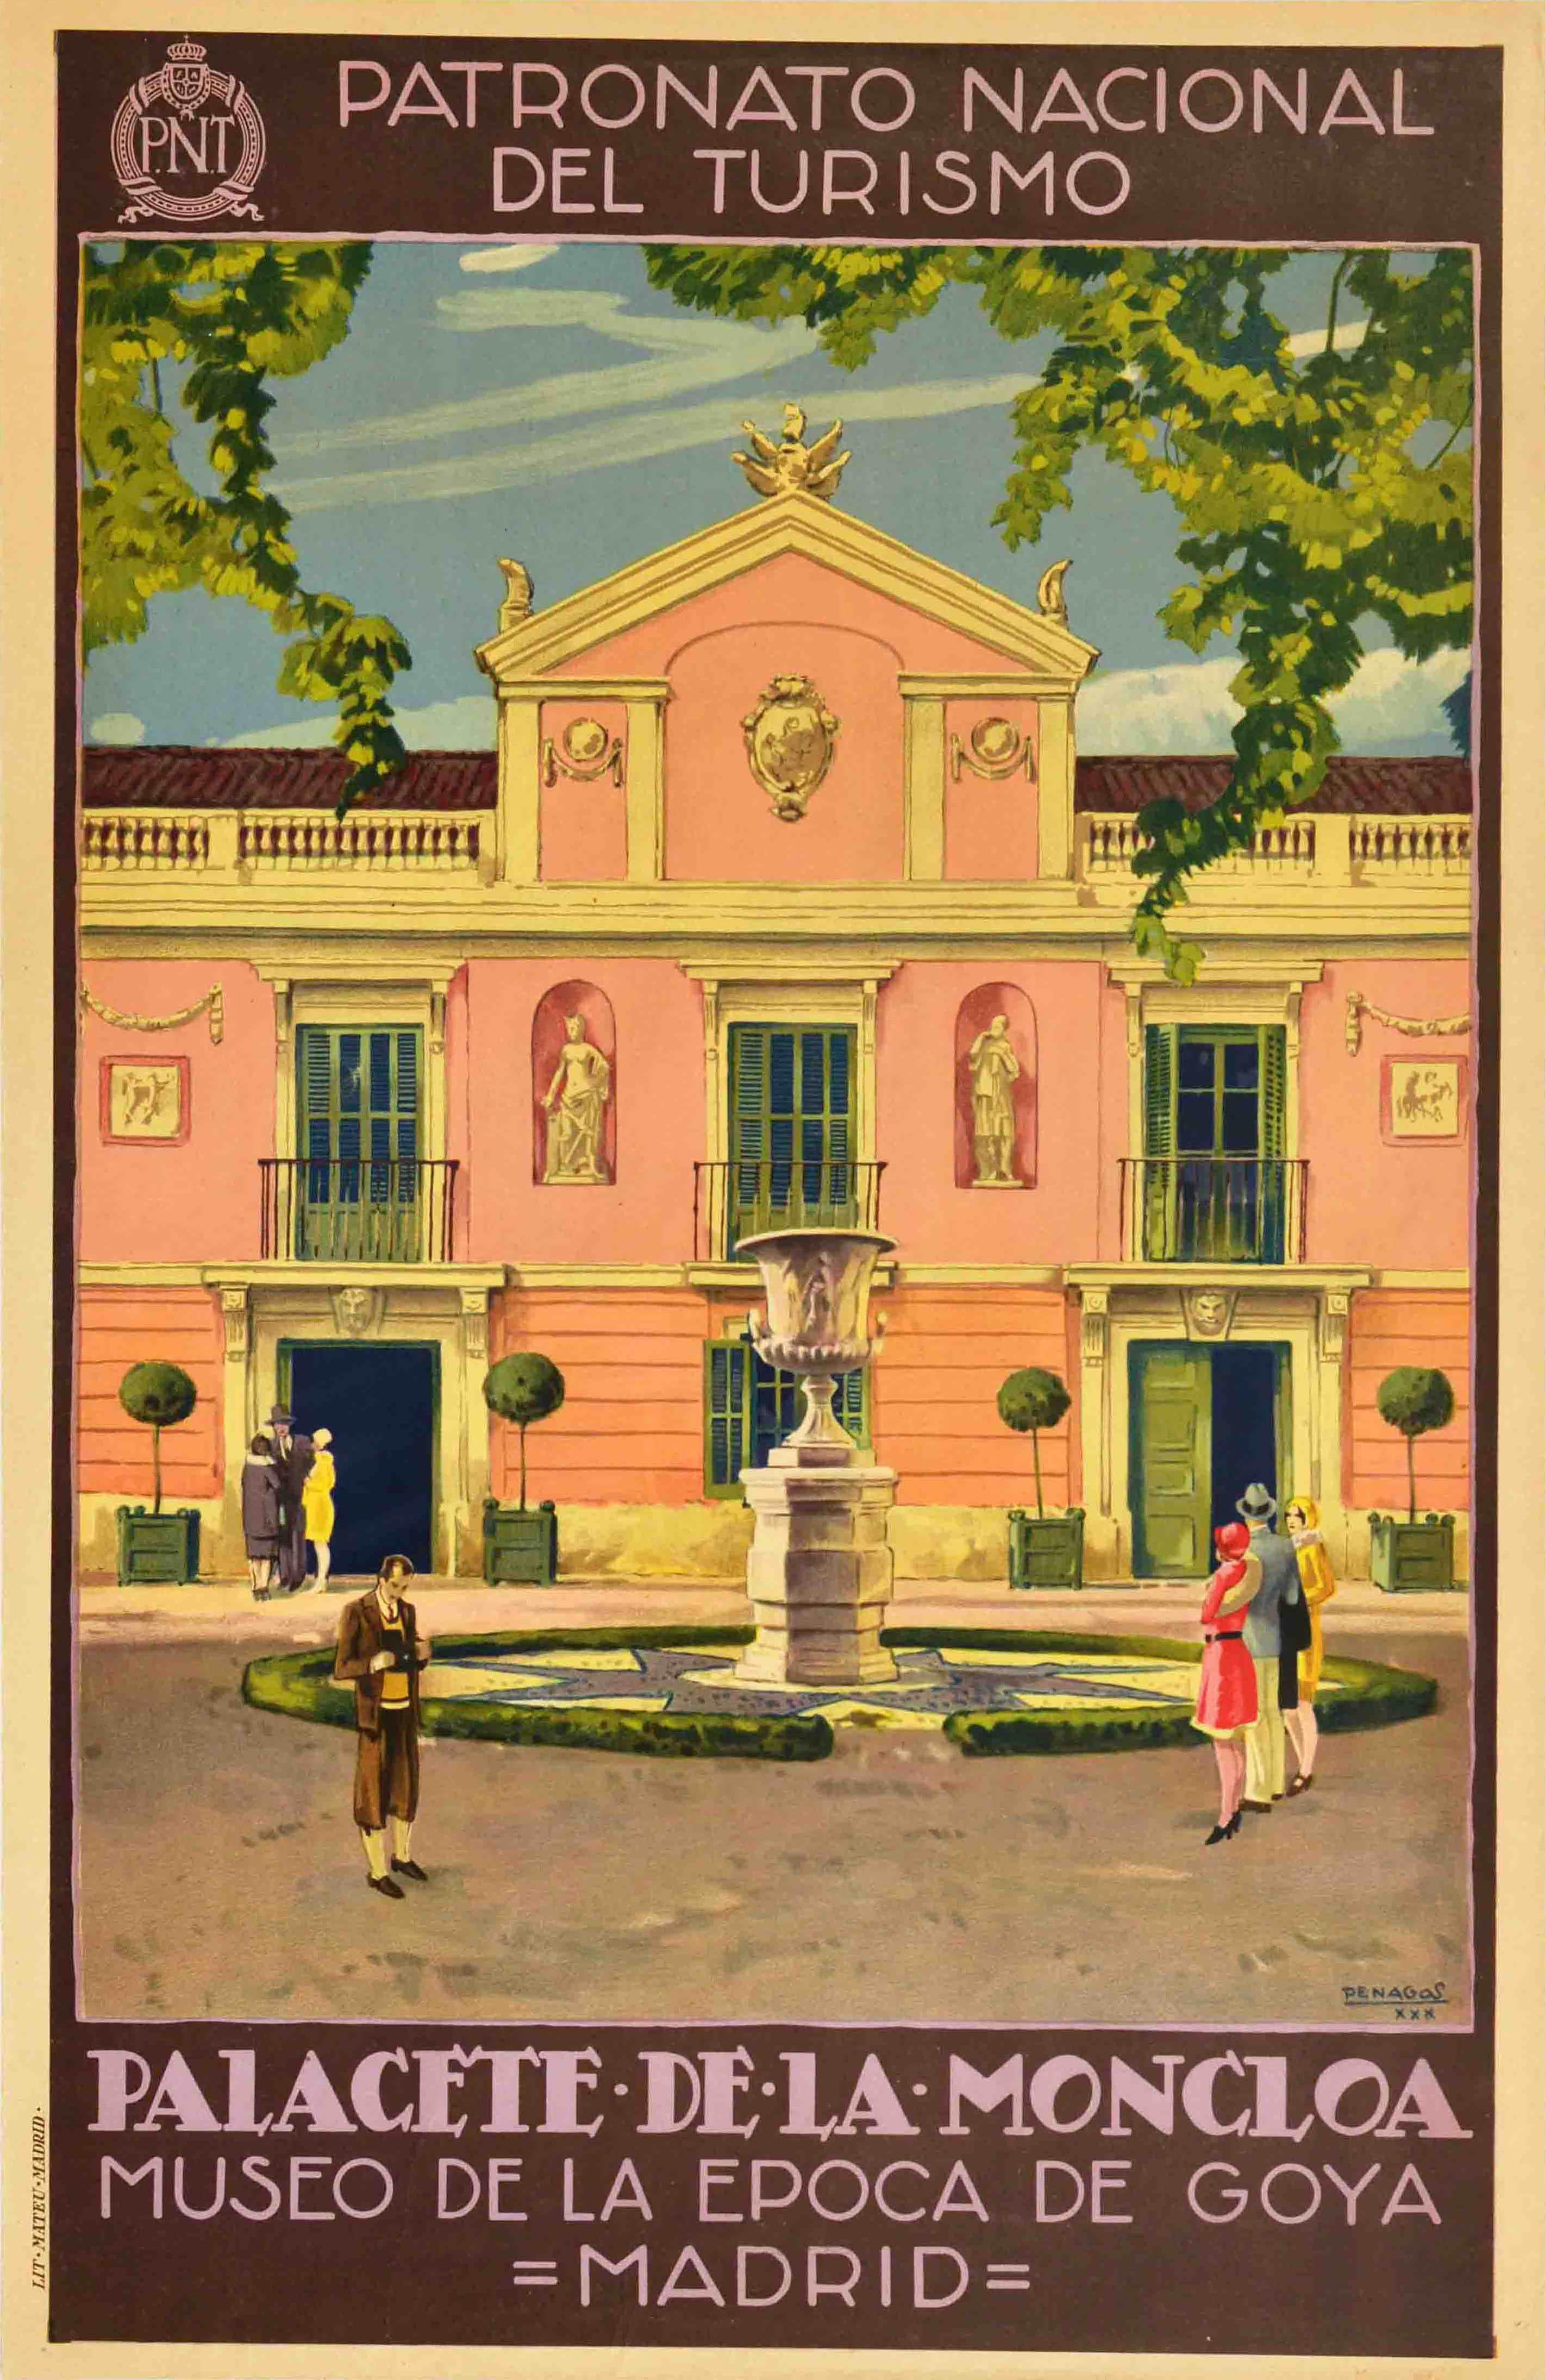 Unknown Print - Original Vintage Travel Poster Palacete De La Moncloa Palace PNT Madrid Spain